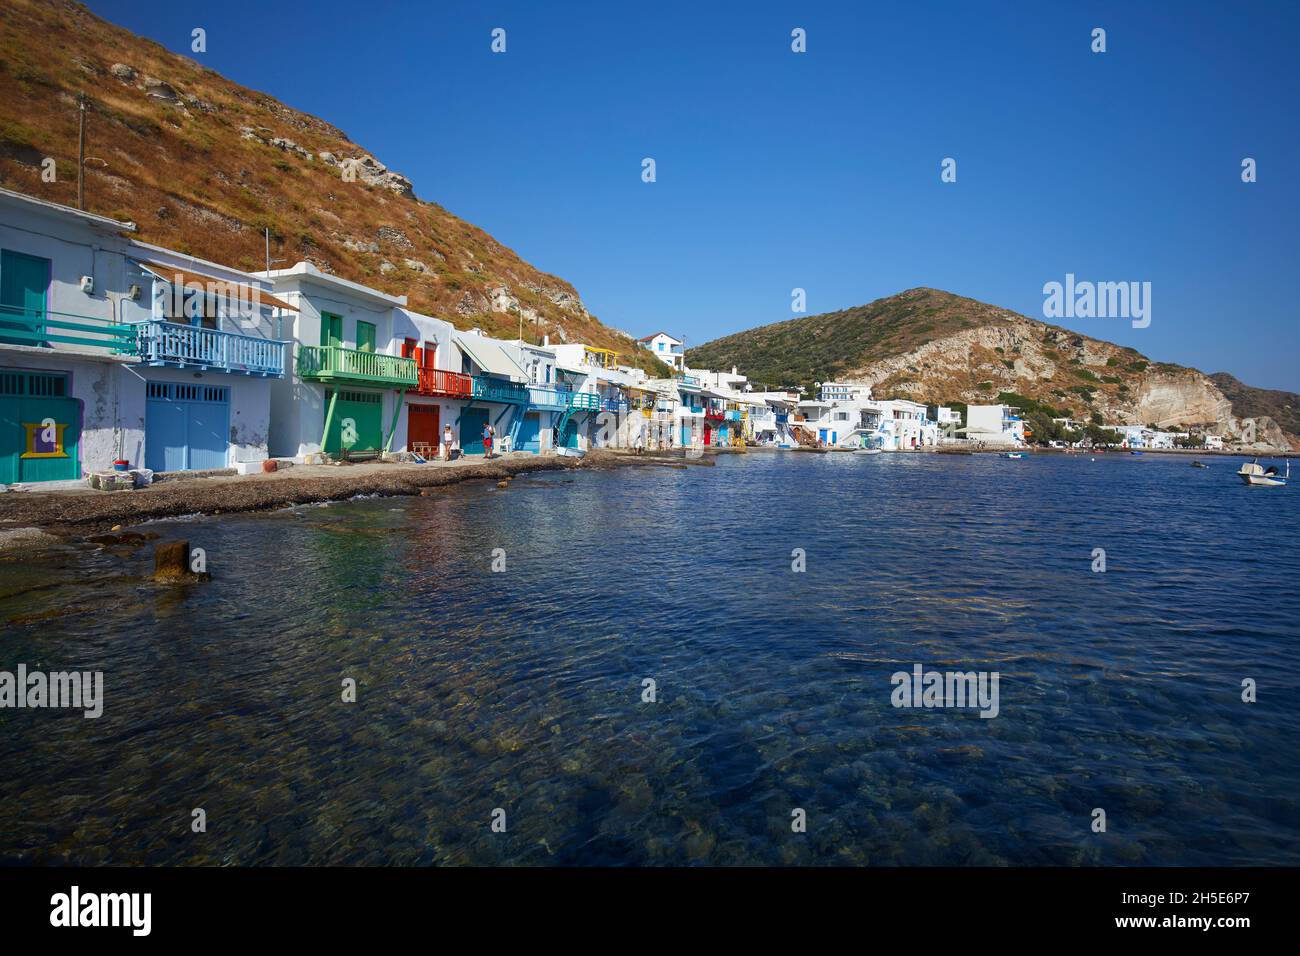 Le village coloré de Klima, île de Milos, Grèce Banque D'Images